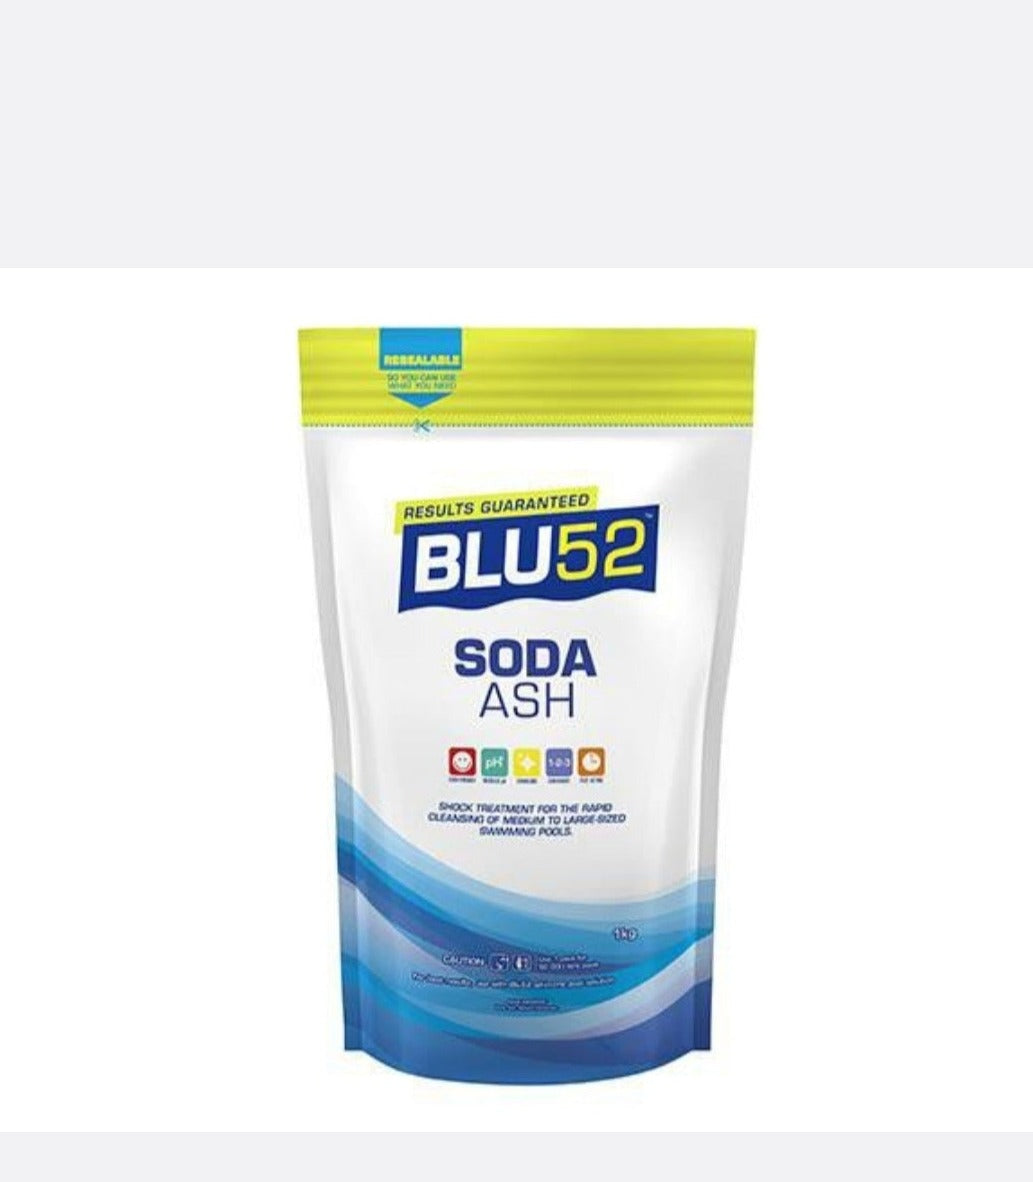 Blu52 Soda Ash